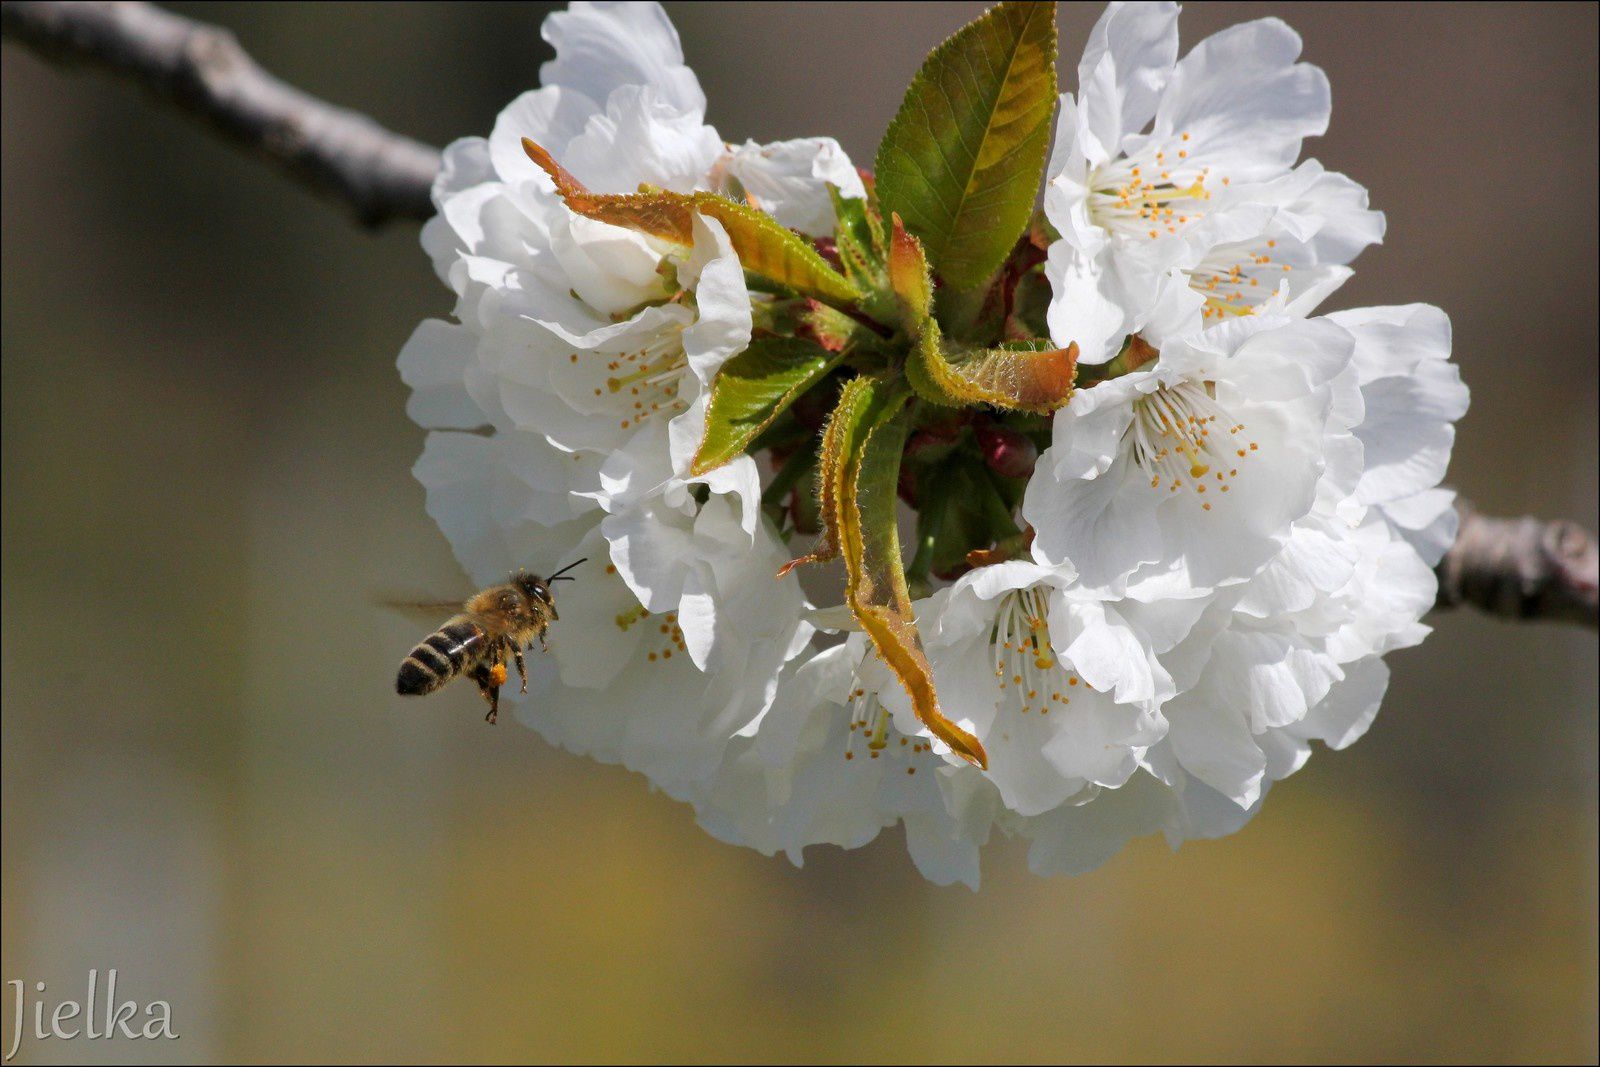 CÉRET (les abeilles et les cerisiers)